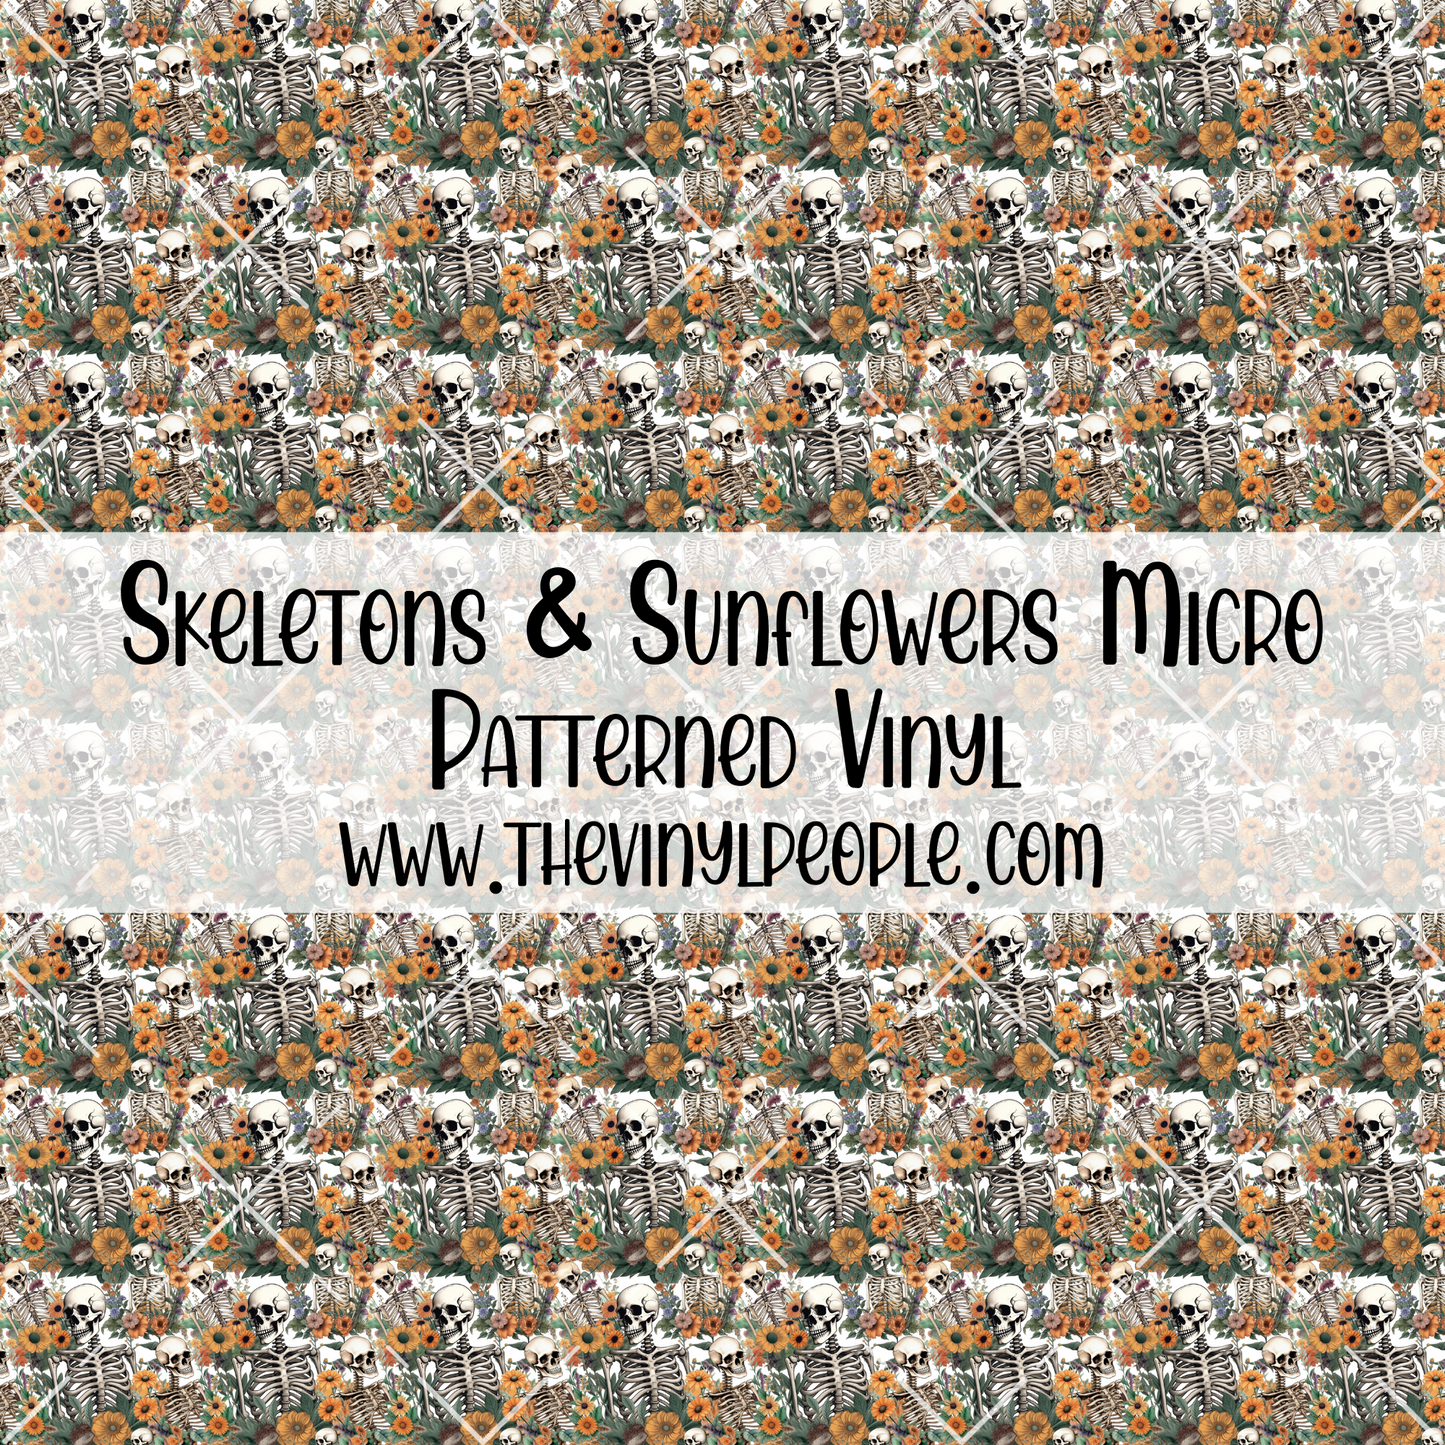 Skeletons & Sunflowers Patterned Vinyl